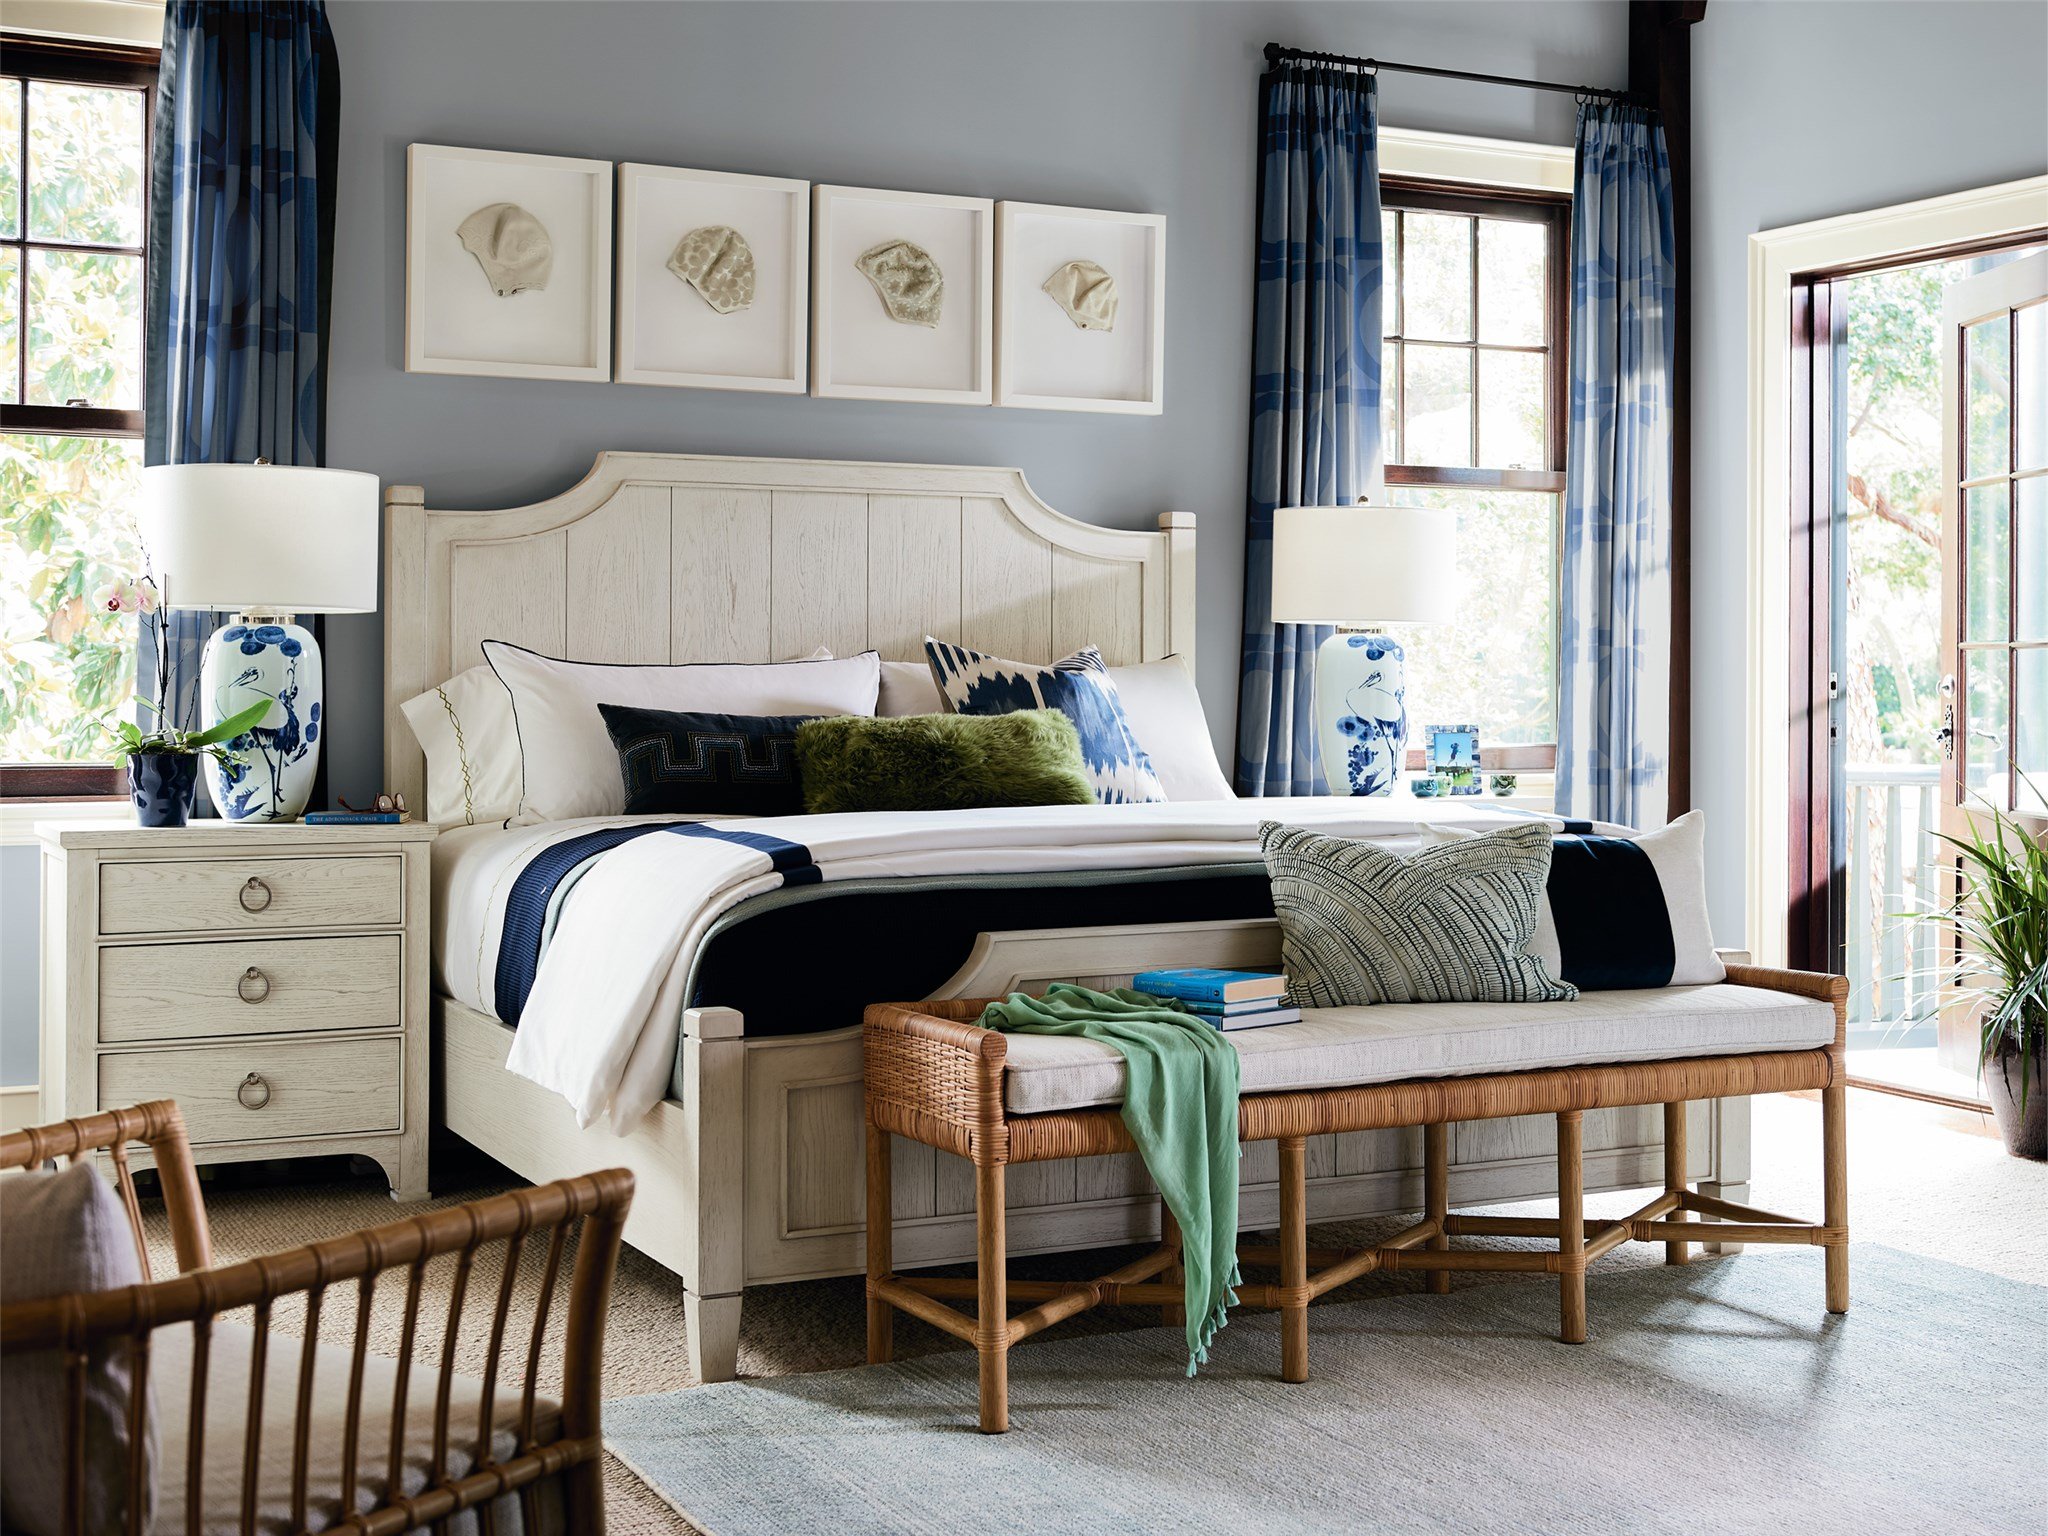 Surfside King Bed Universal Furniture, Coastal King Size Bedroom Sets